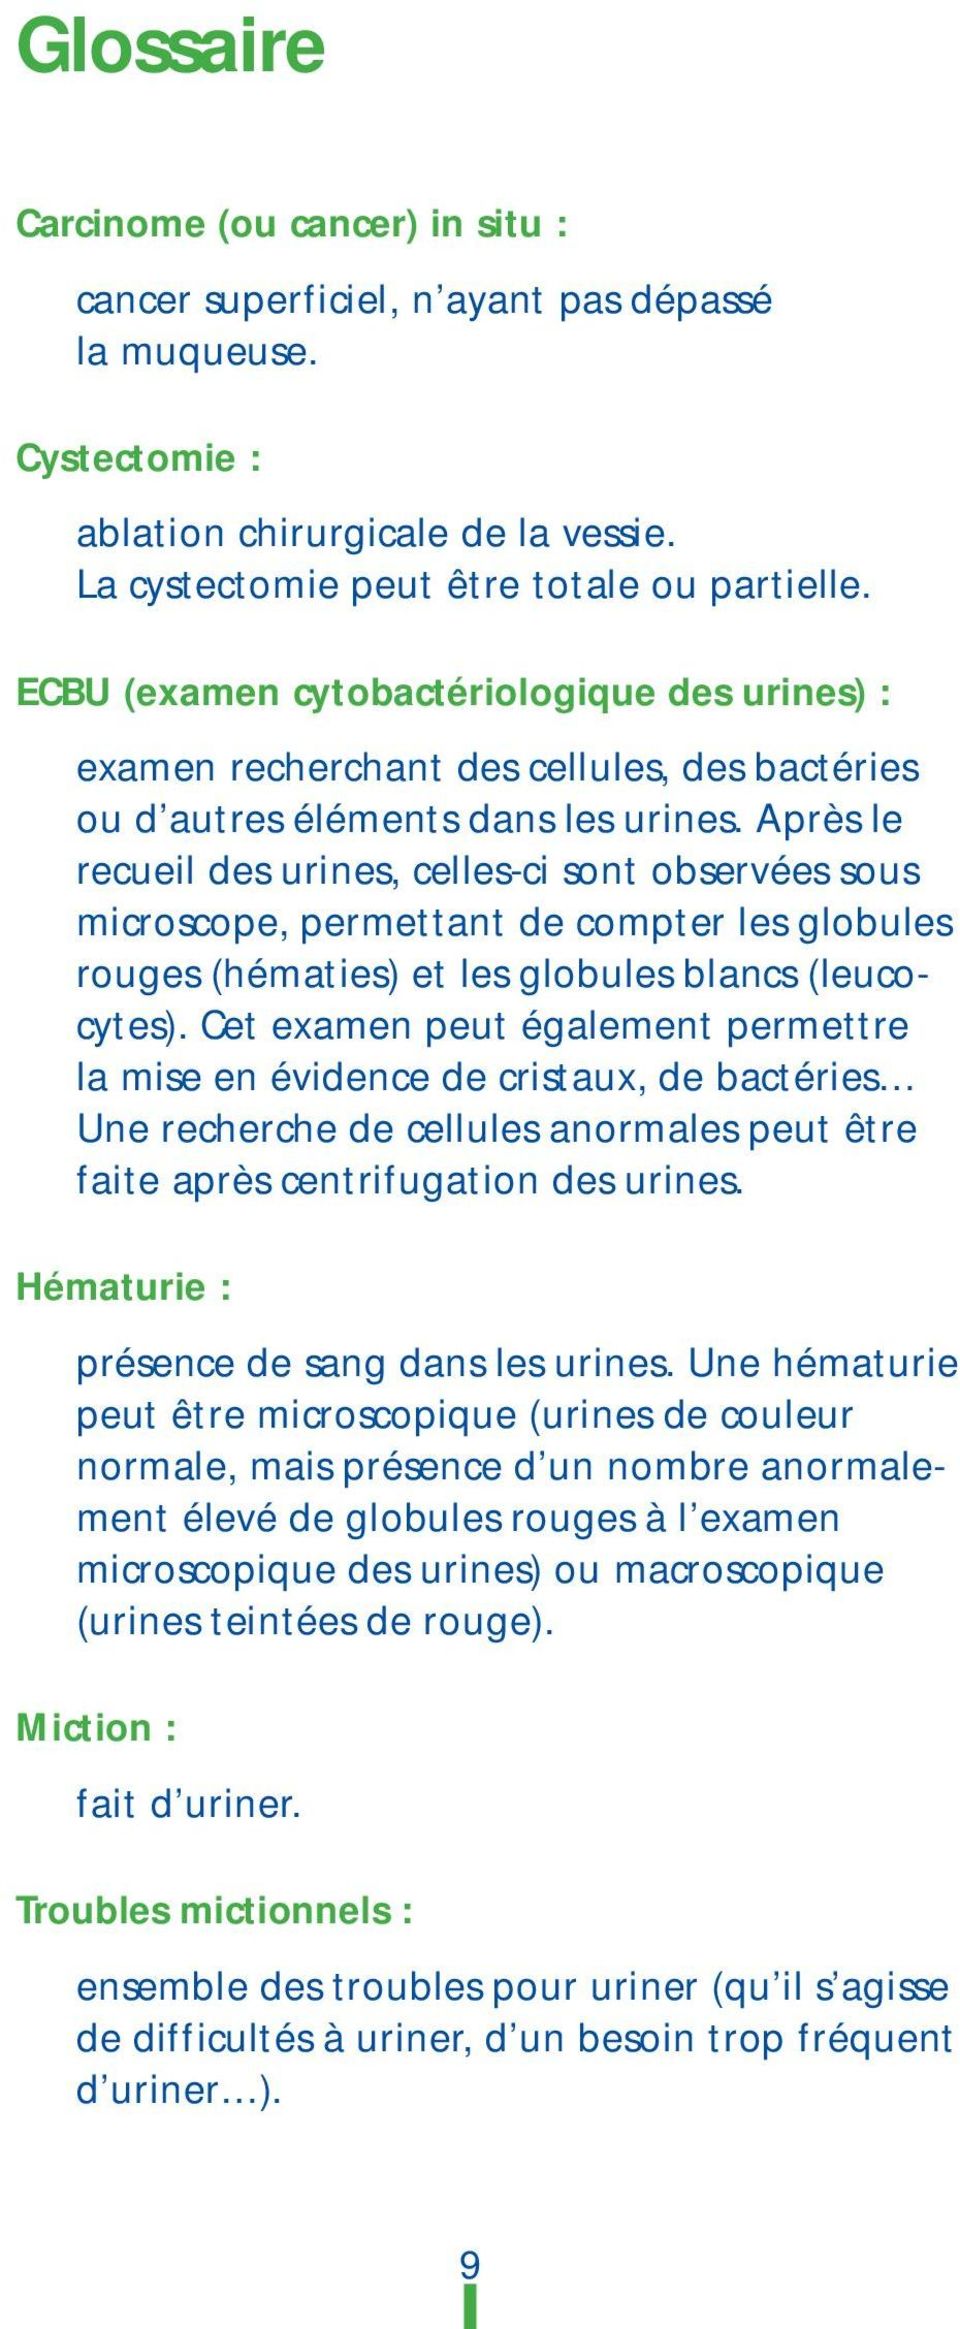 Après le recueil des urines, celles-ci sont observées sous microscope, permettant de compter les globules rouges (hématies) et les globules blancs (leucocytes).